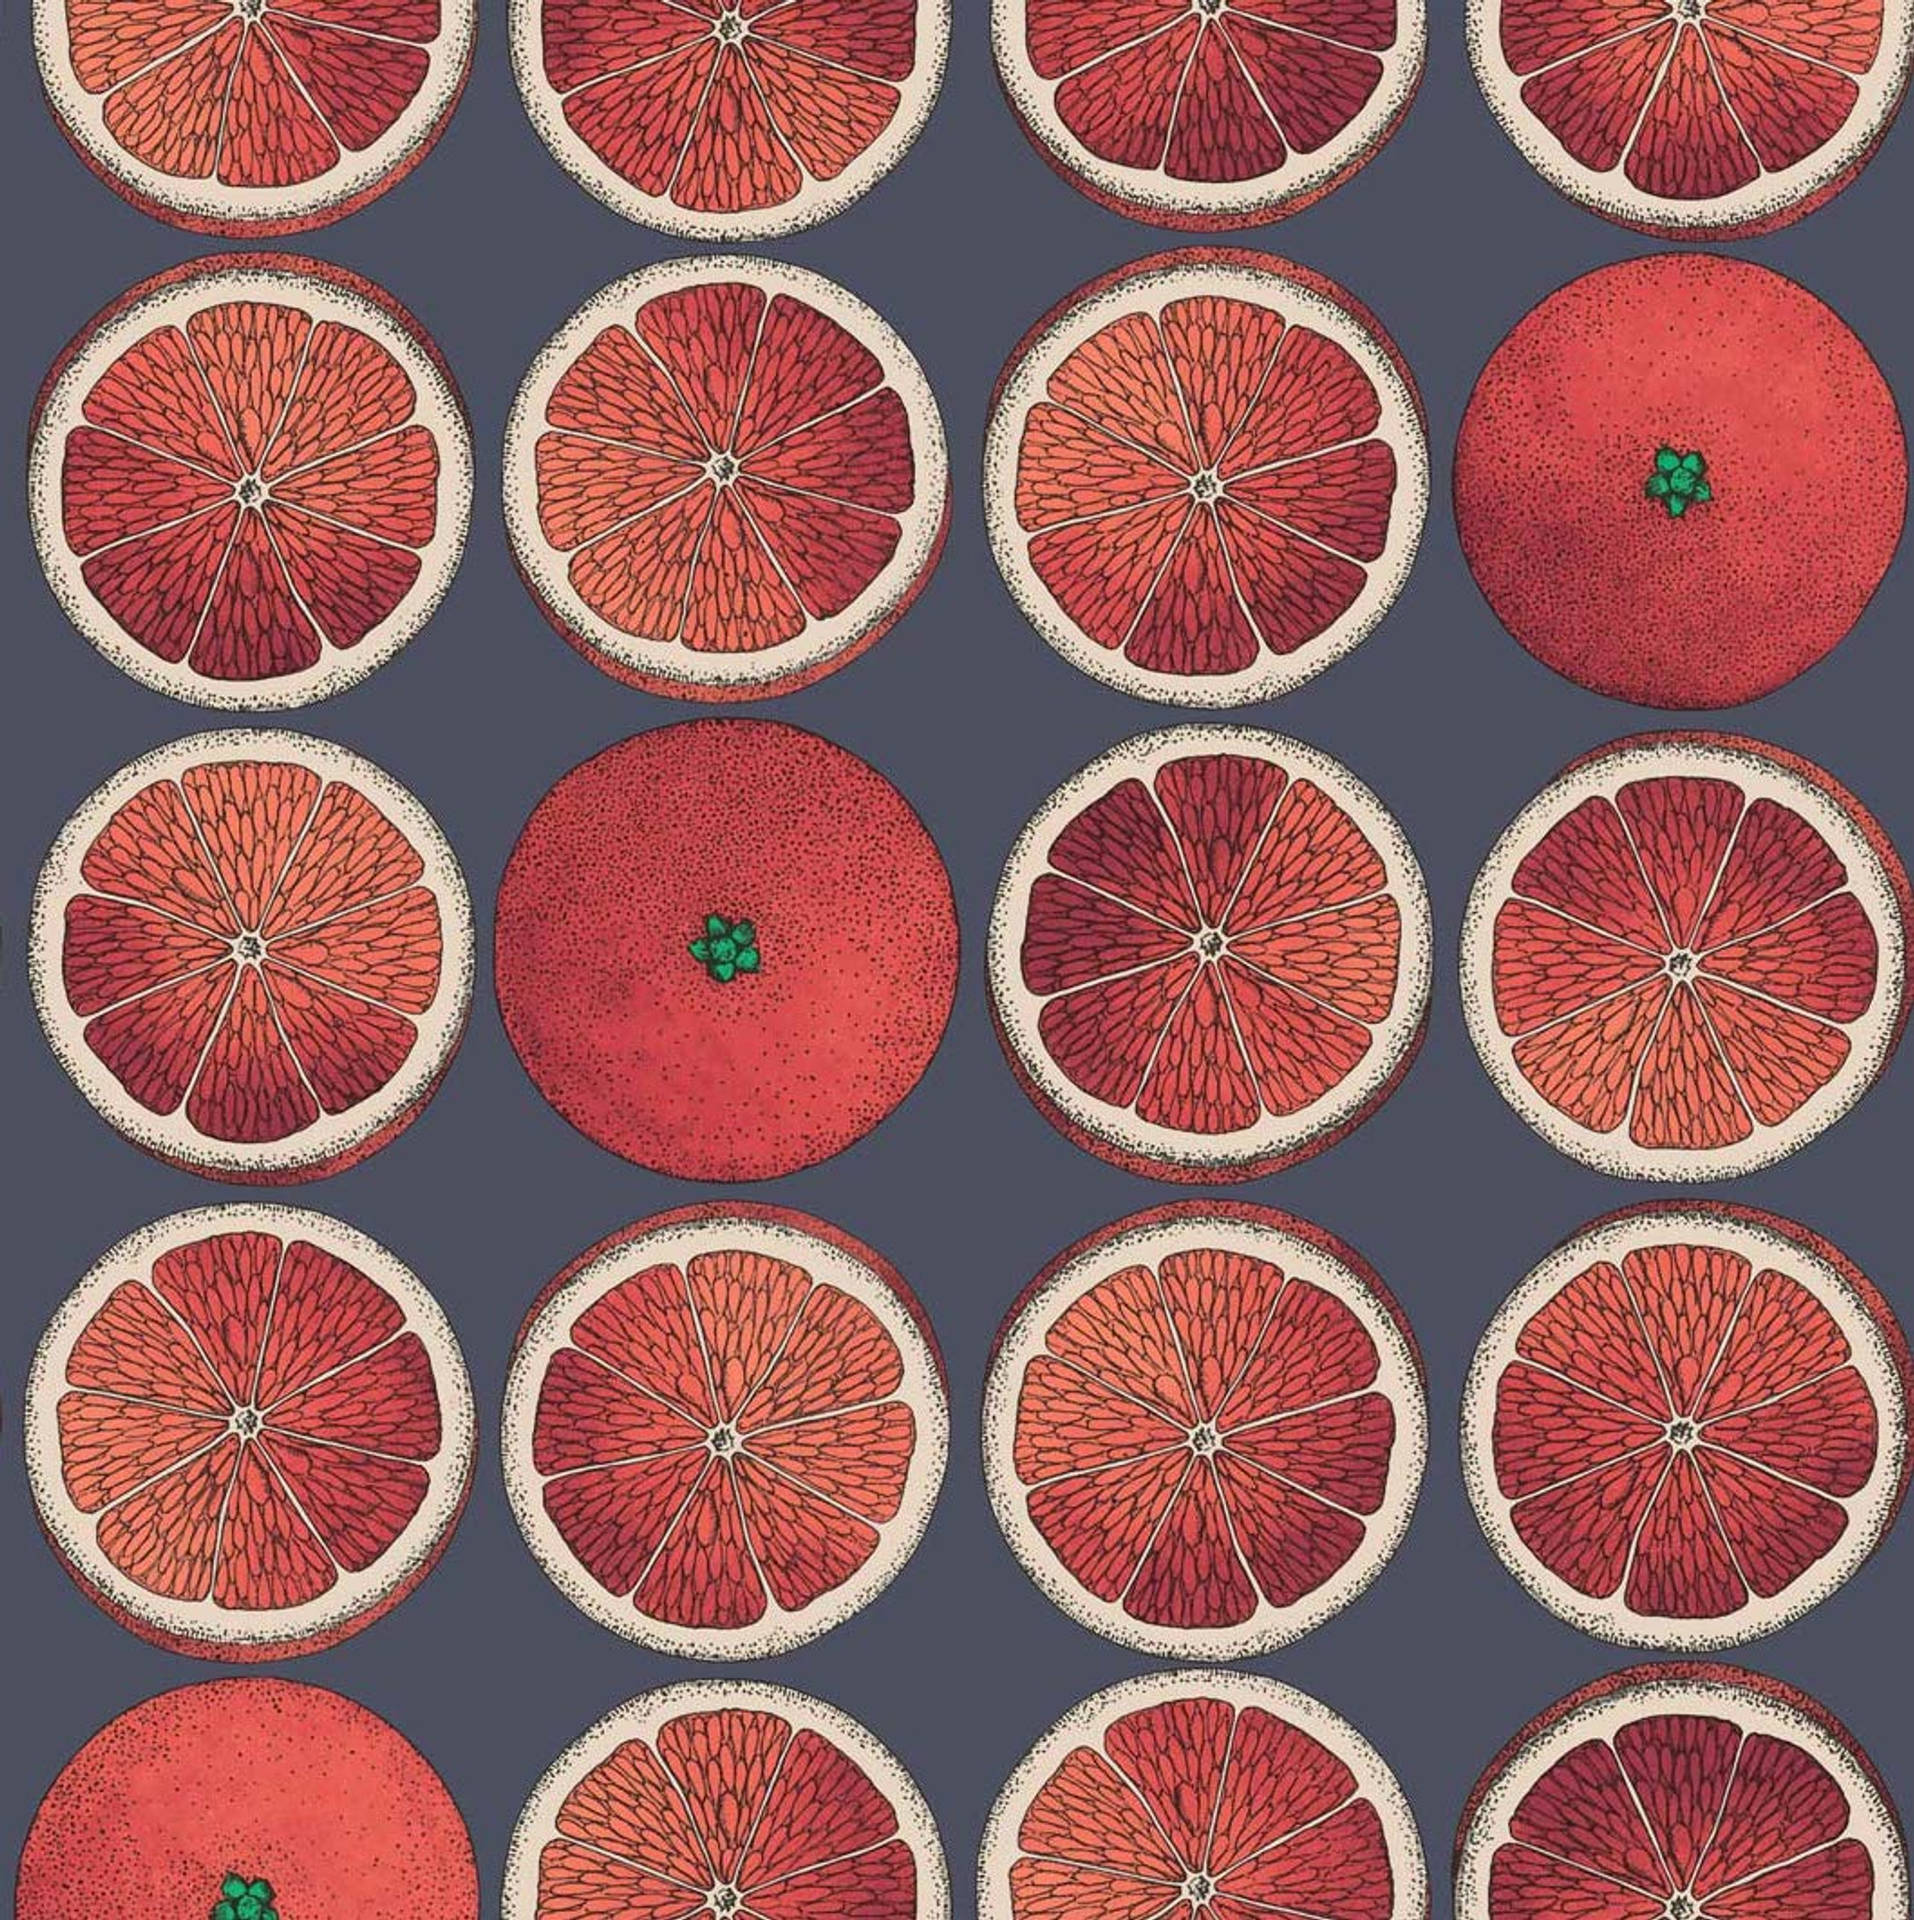 Blood Orange Citrus Fruit Animated Pattern Wallpaper